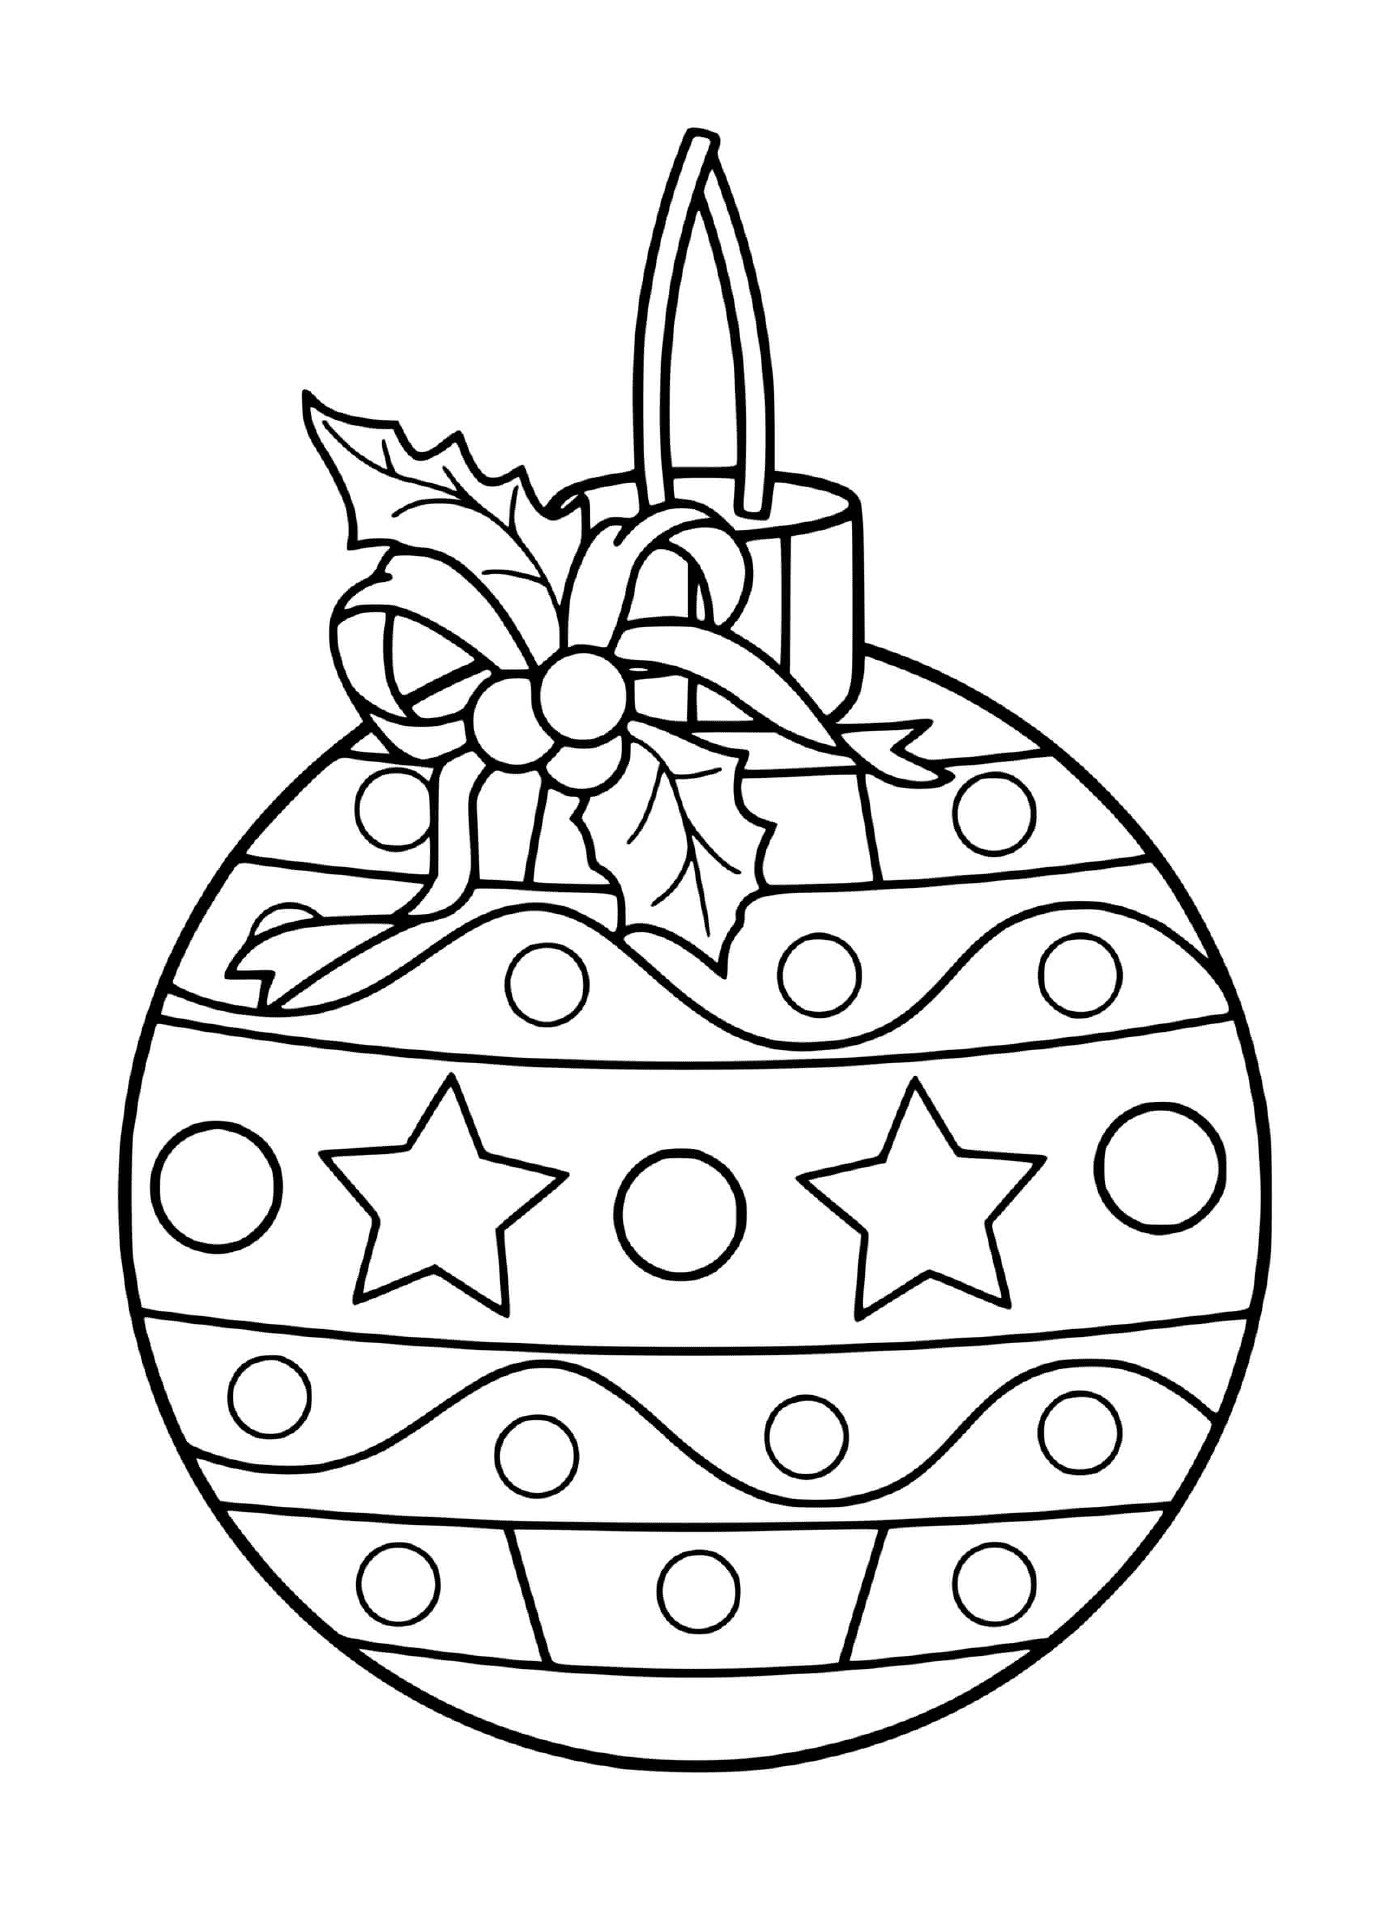  Uma bela bola de Natal com decorações festivas 